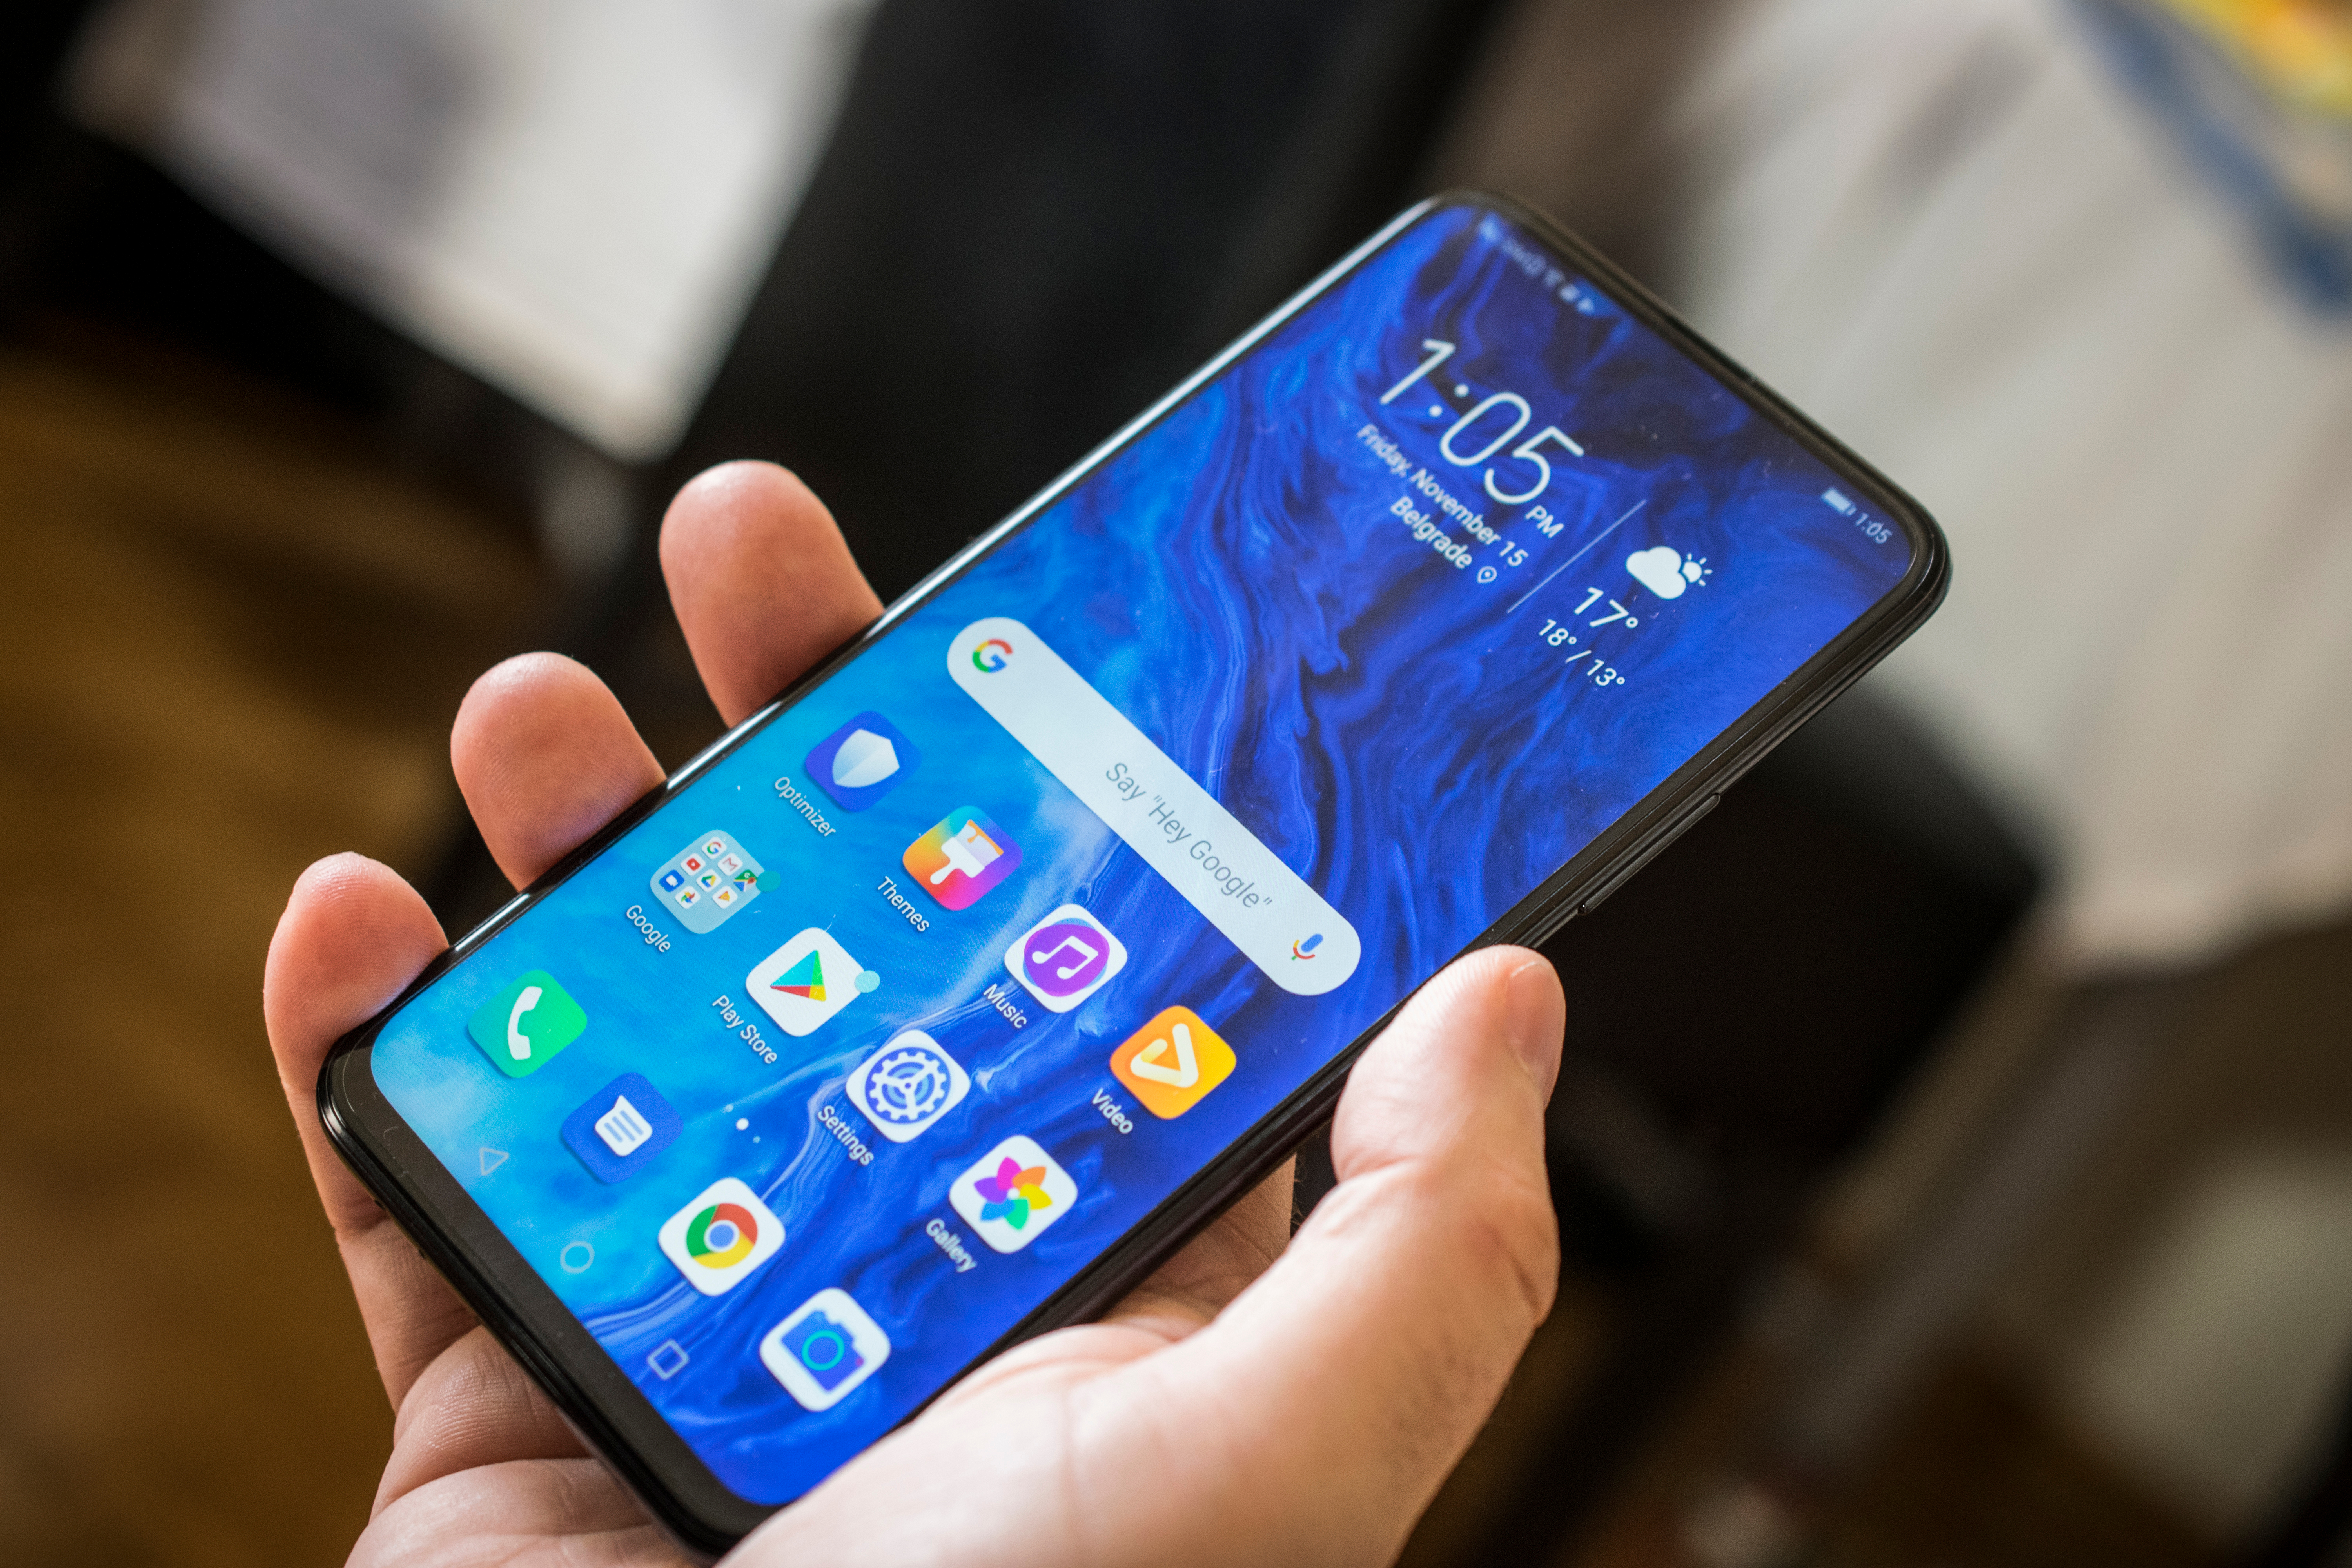 Livrările de telefoane Huawei pe piaţa din China s-au prăbuşit din cauza sancţiunilor americane